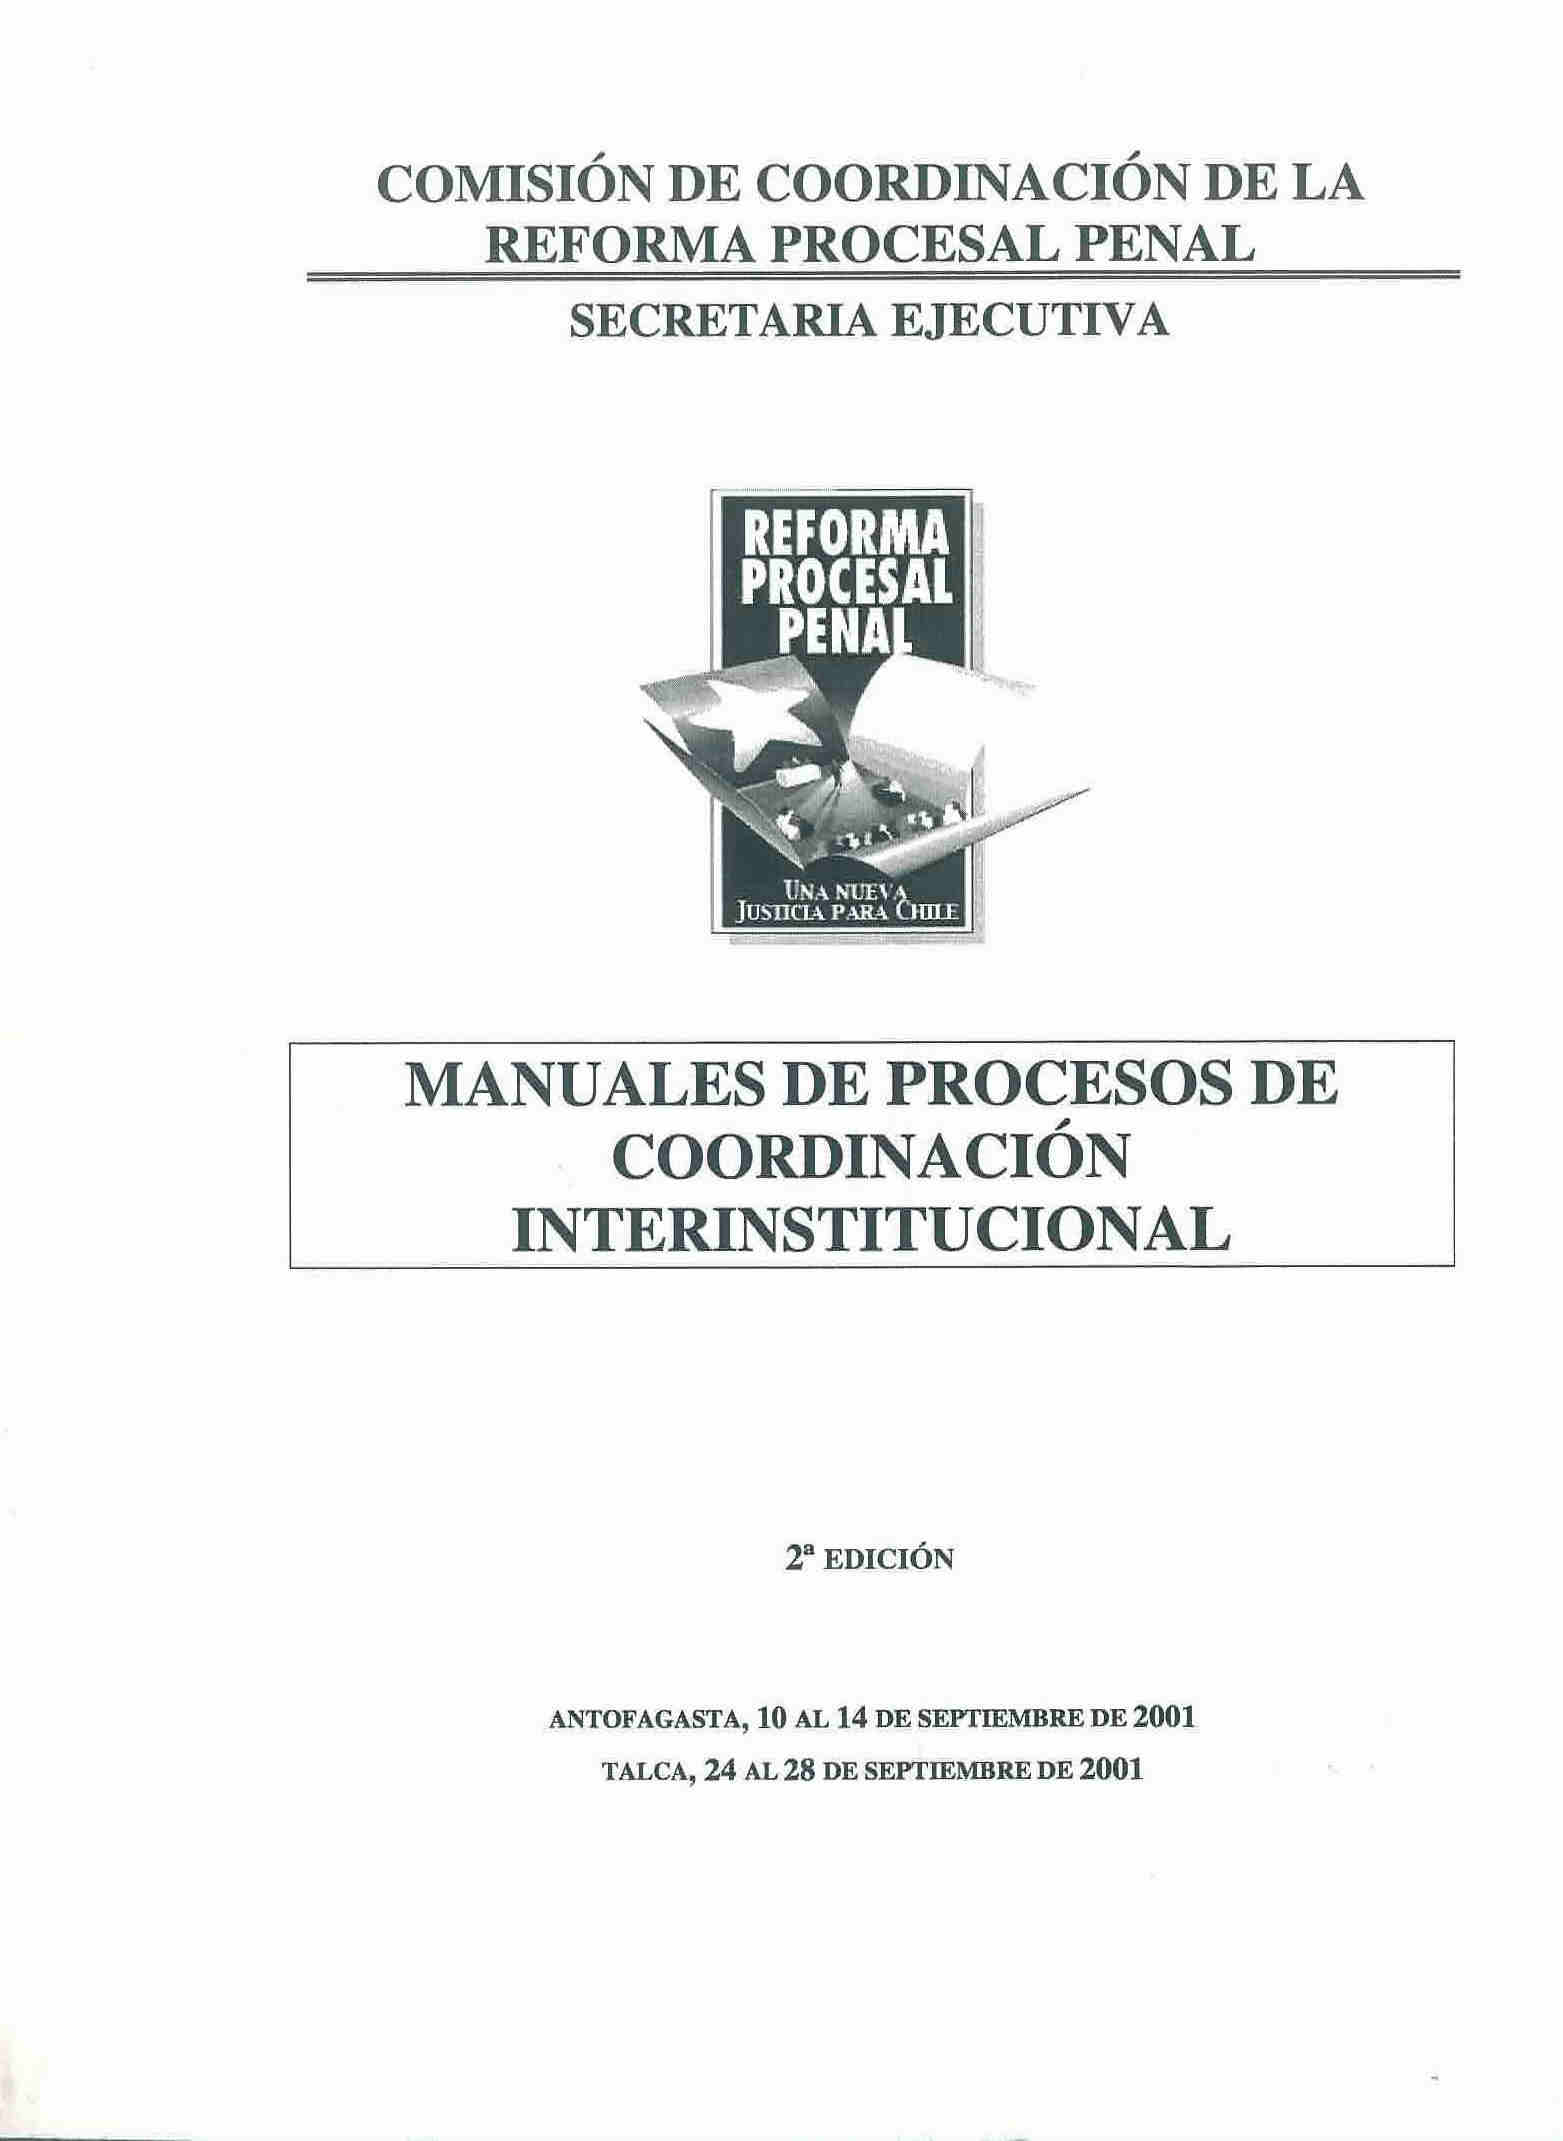 Manuales de procesos de coordinación interinstitucional